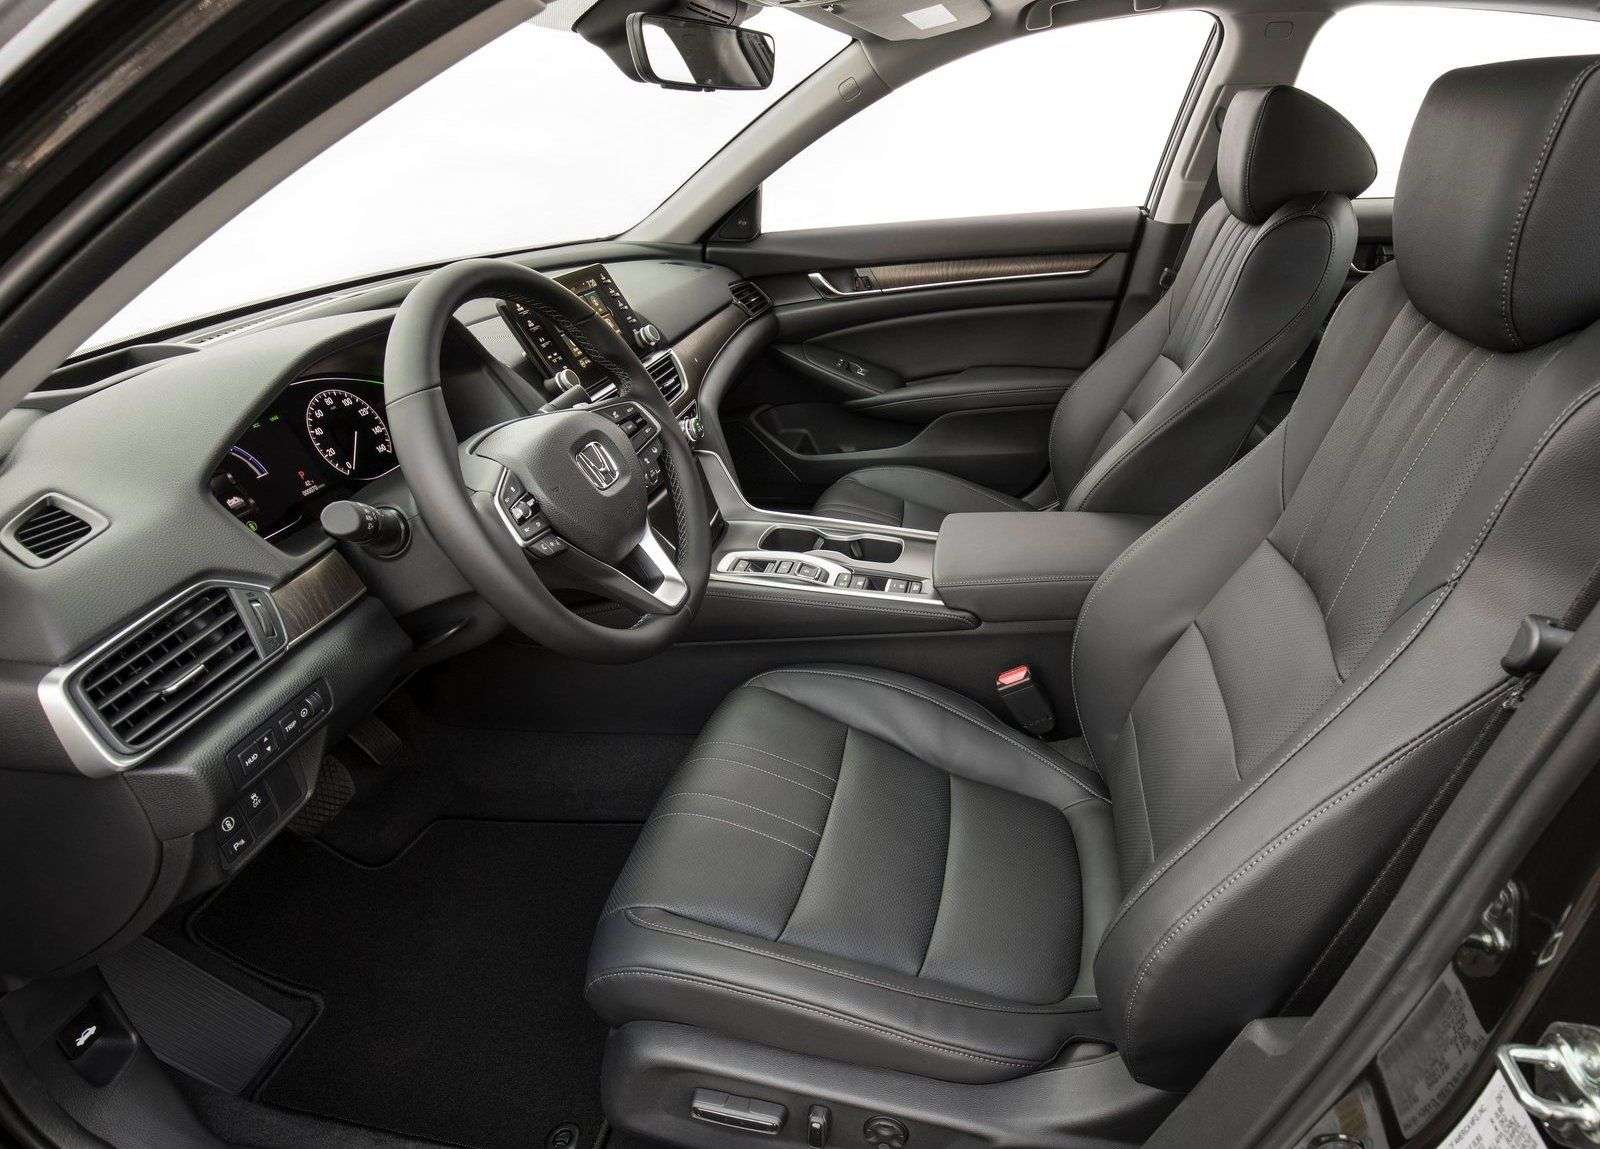 Обзор седана Honda Accord 2018: технические характеристики, комплектации, цена